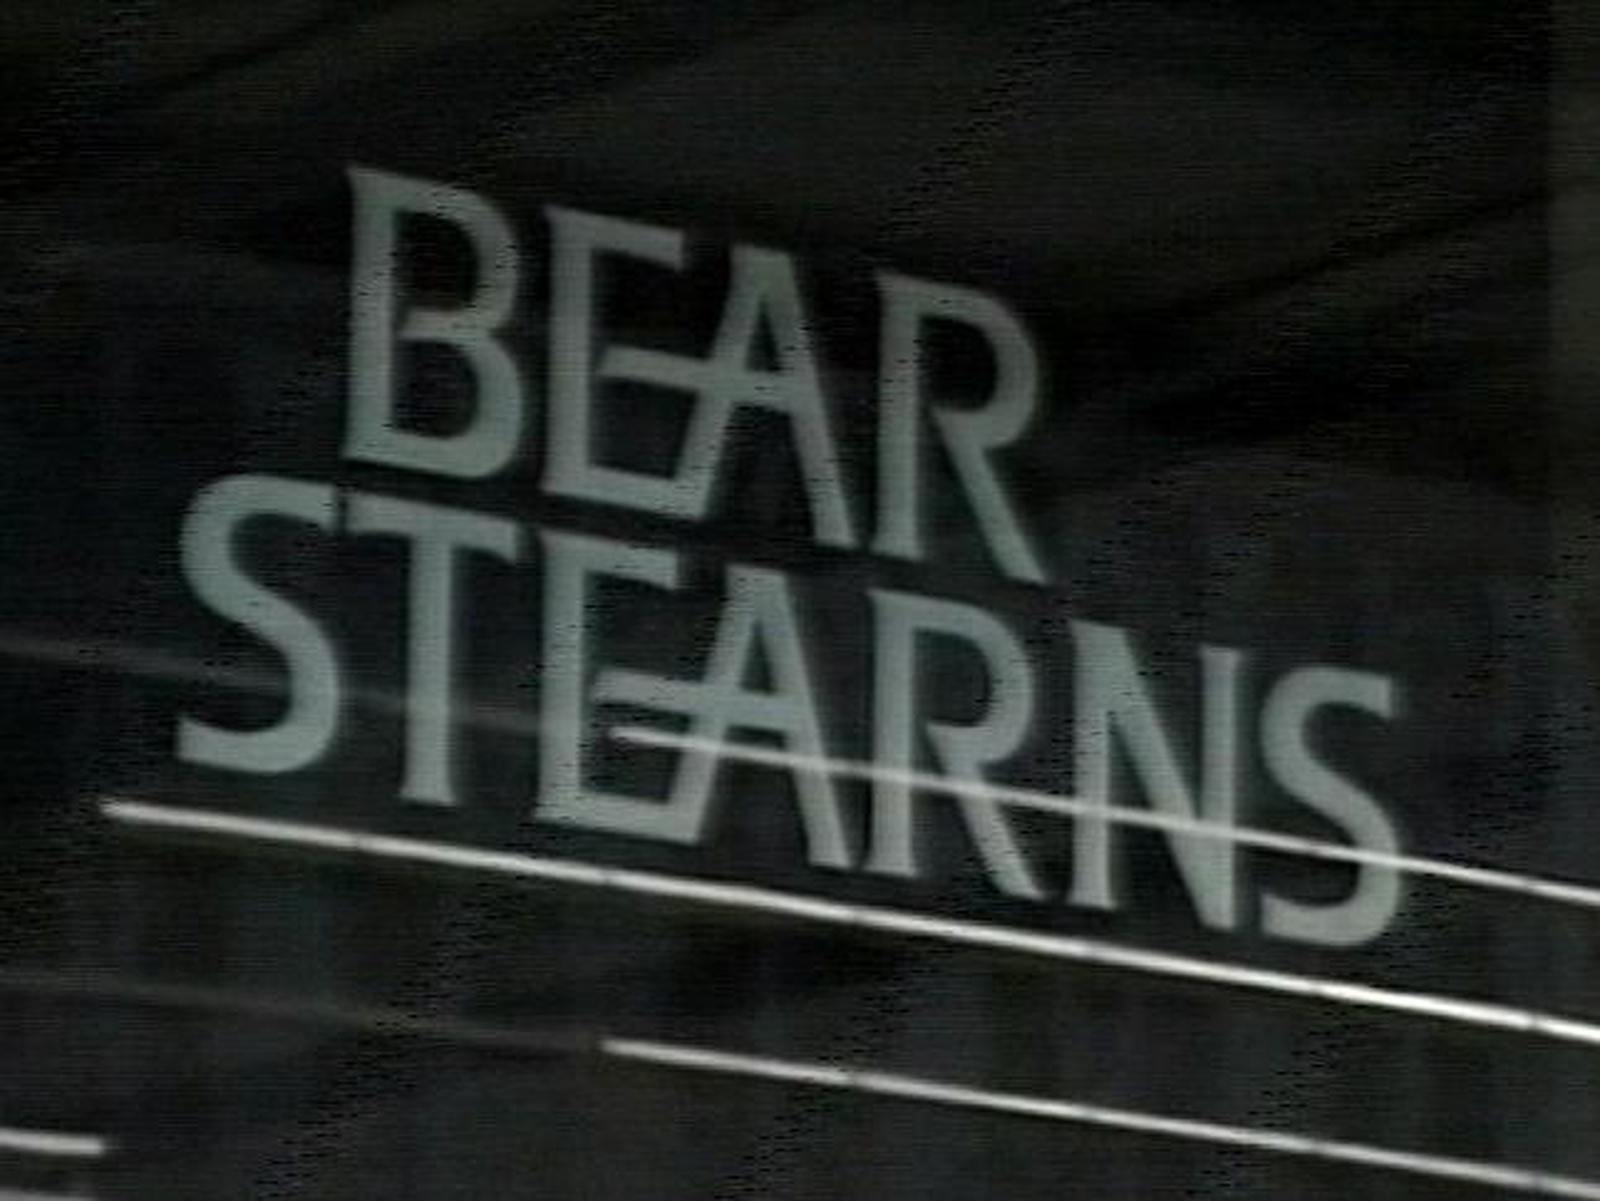 bear stearns client base